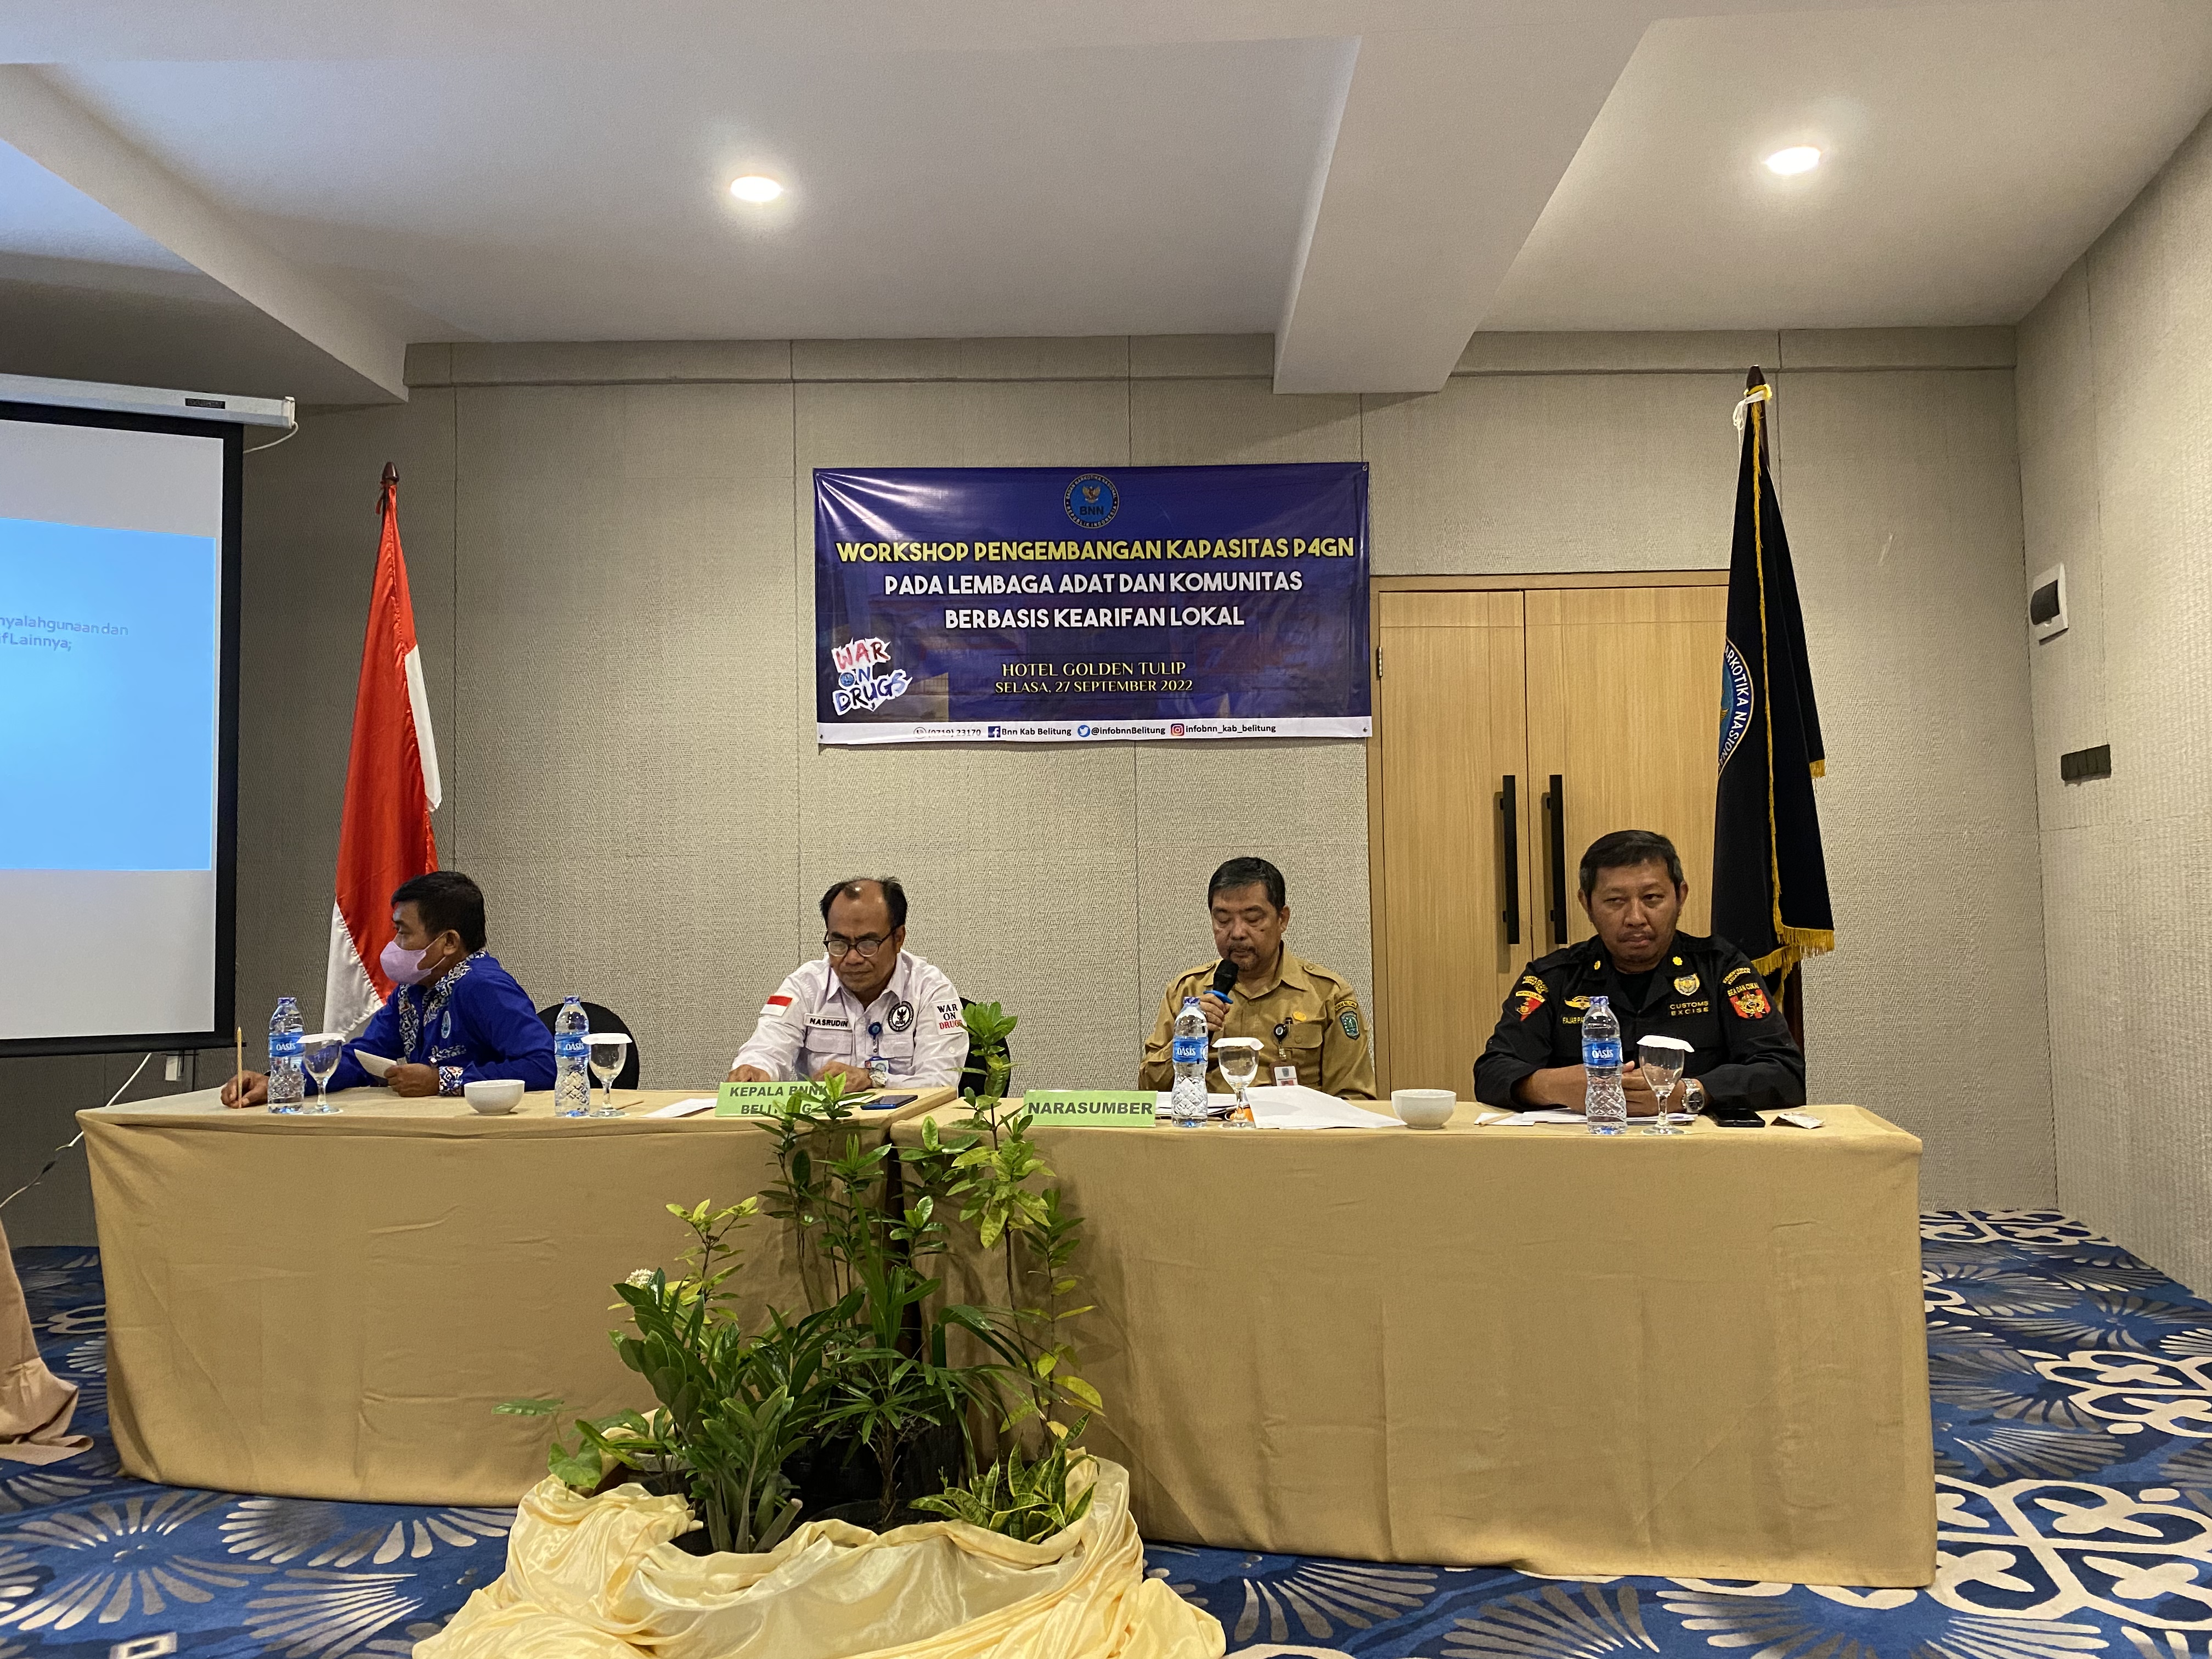 BNNK Belitung Adakan Workshop Pengembangan Kapasitas P4GN